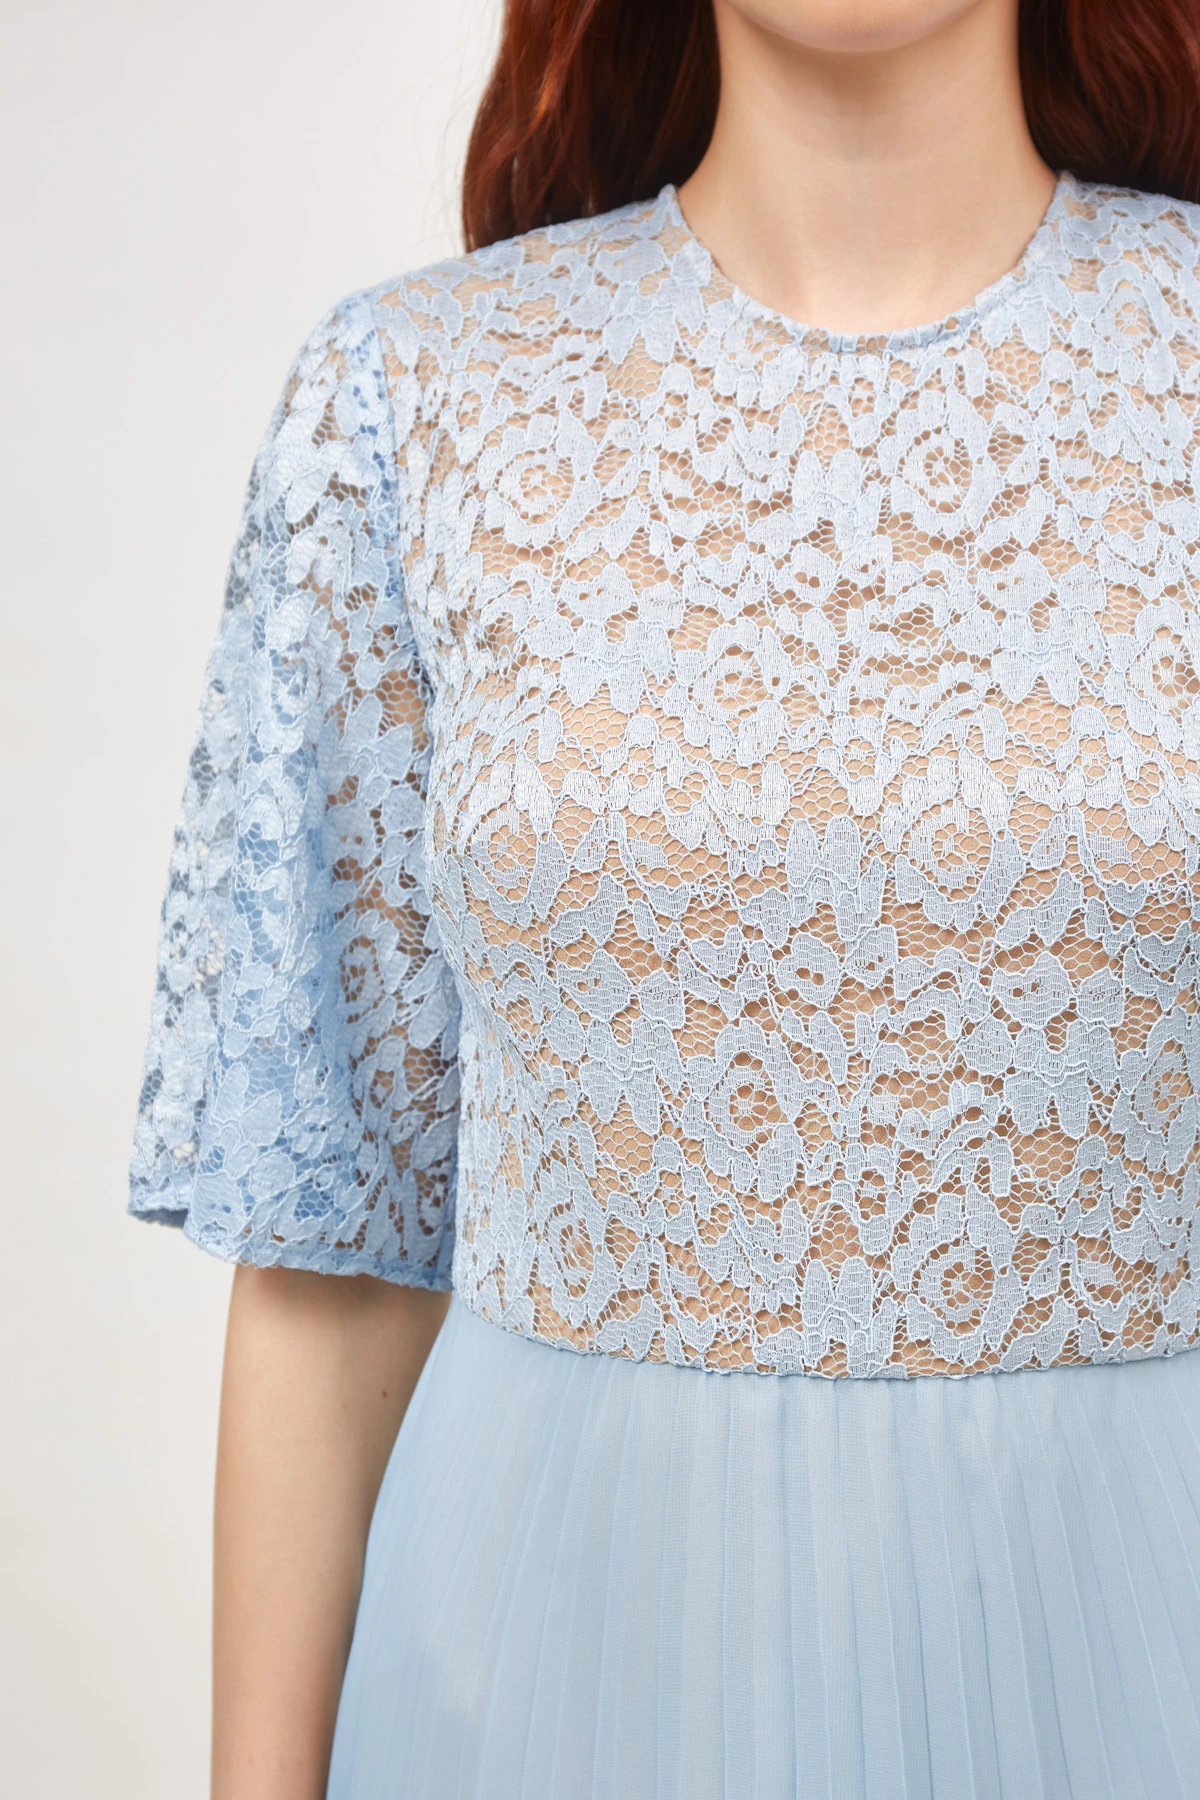 Midi dress in blue lace and chiffon , photo 4